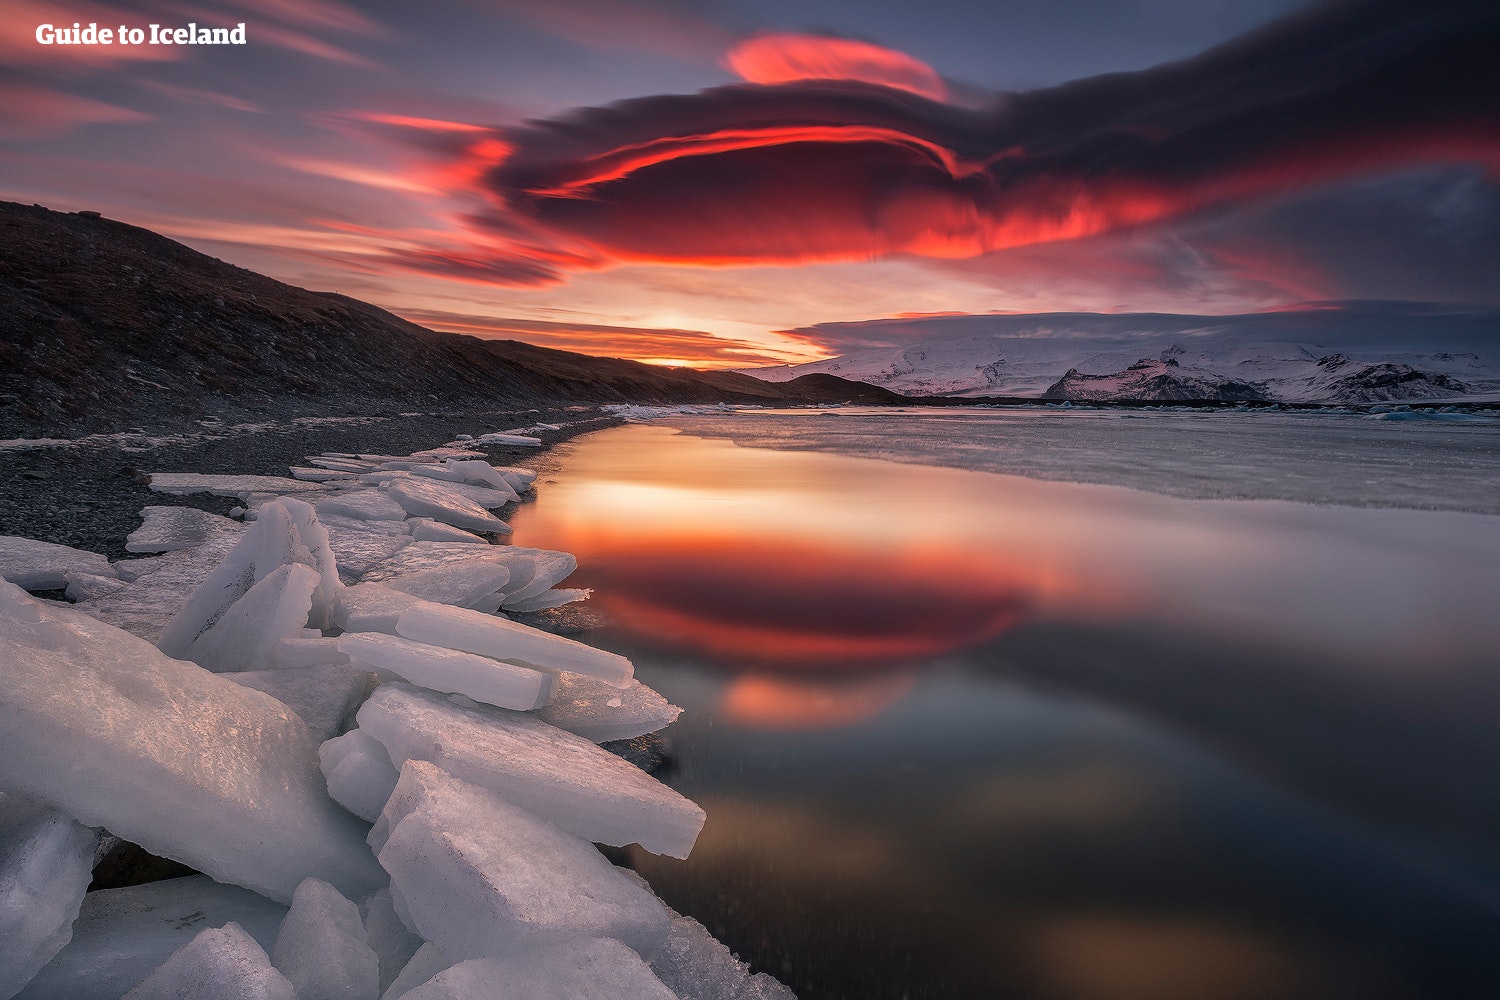 Il sole che tramonta sulla laguna glaciale di Jökulsárlón, dipingendo il cielo di rosso.